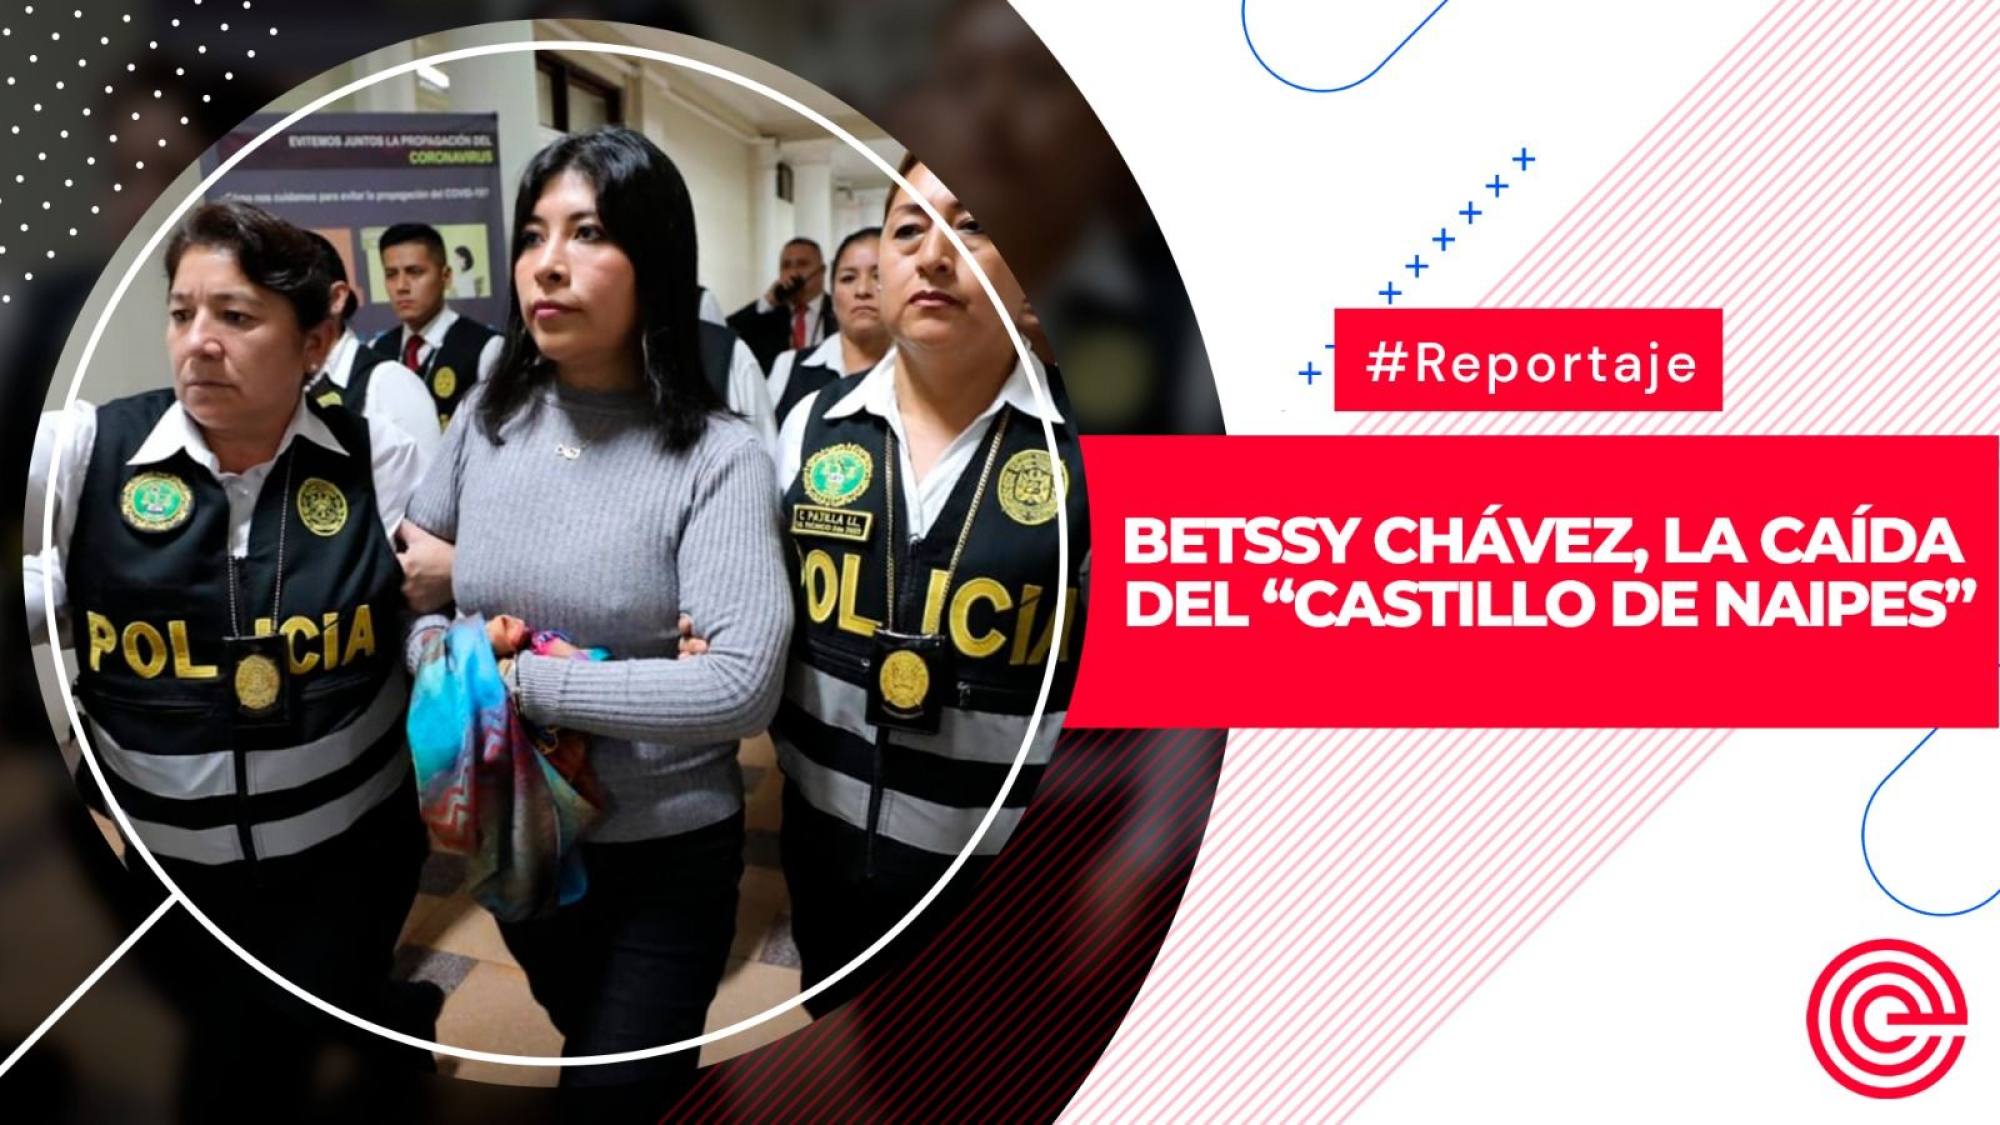 Betssy Chávez, la caída del “castillo de naipes”, Epicentro TV